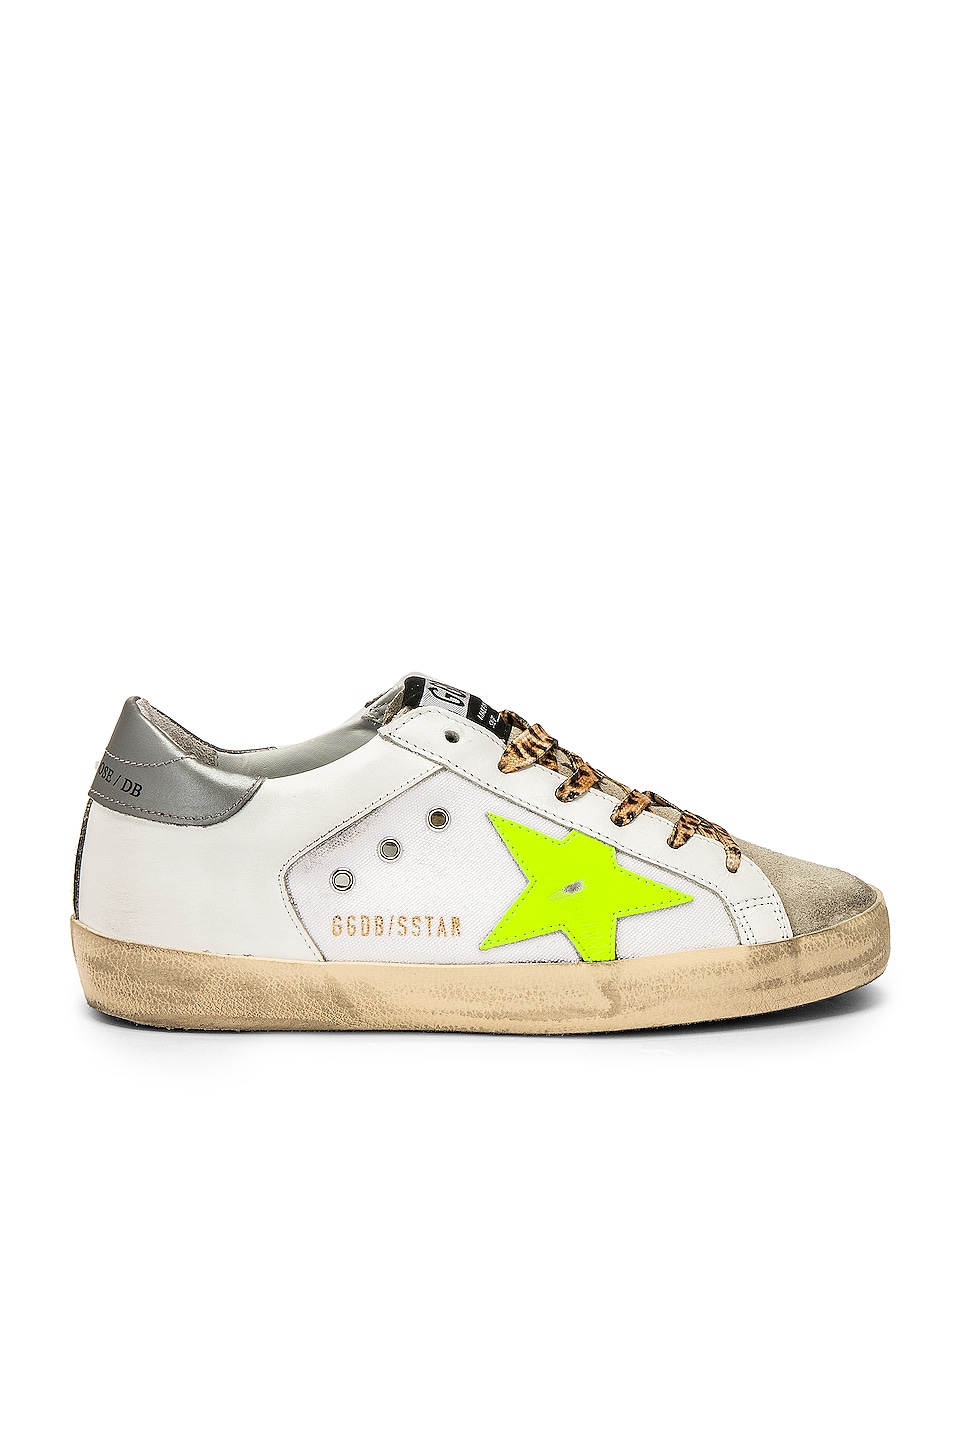 Golden Goose Superstar Sneaker in White Canvas & Fluorescent | REVOLVE